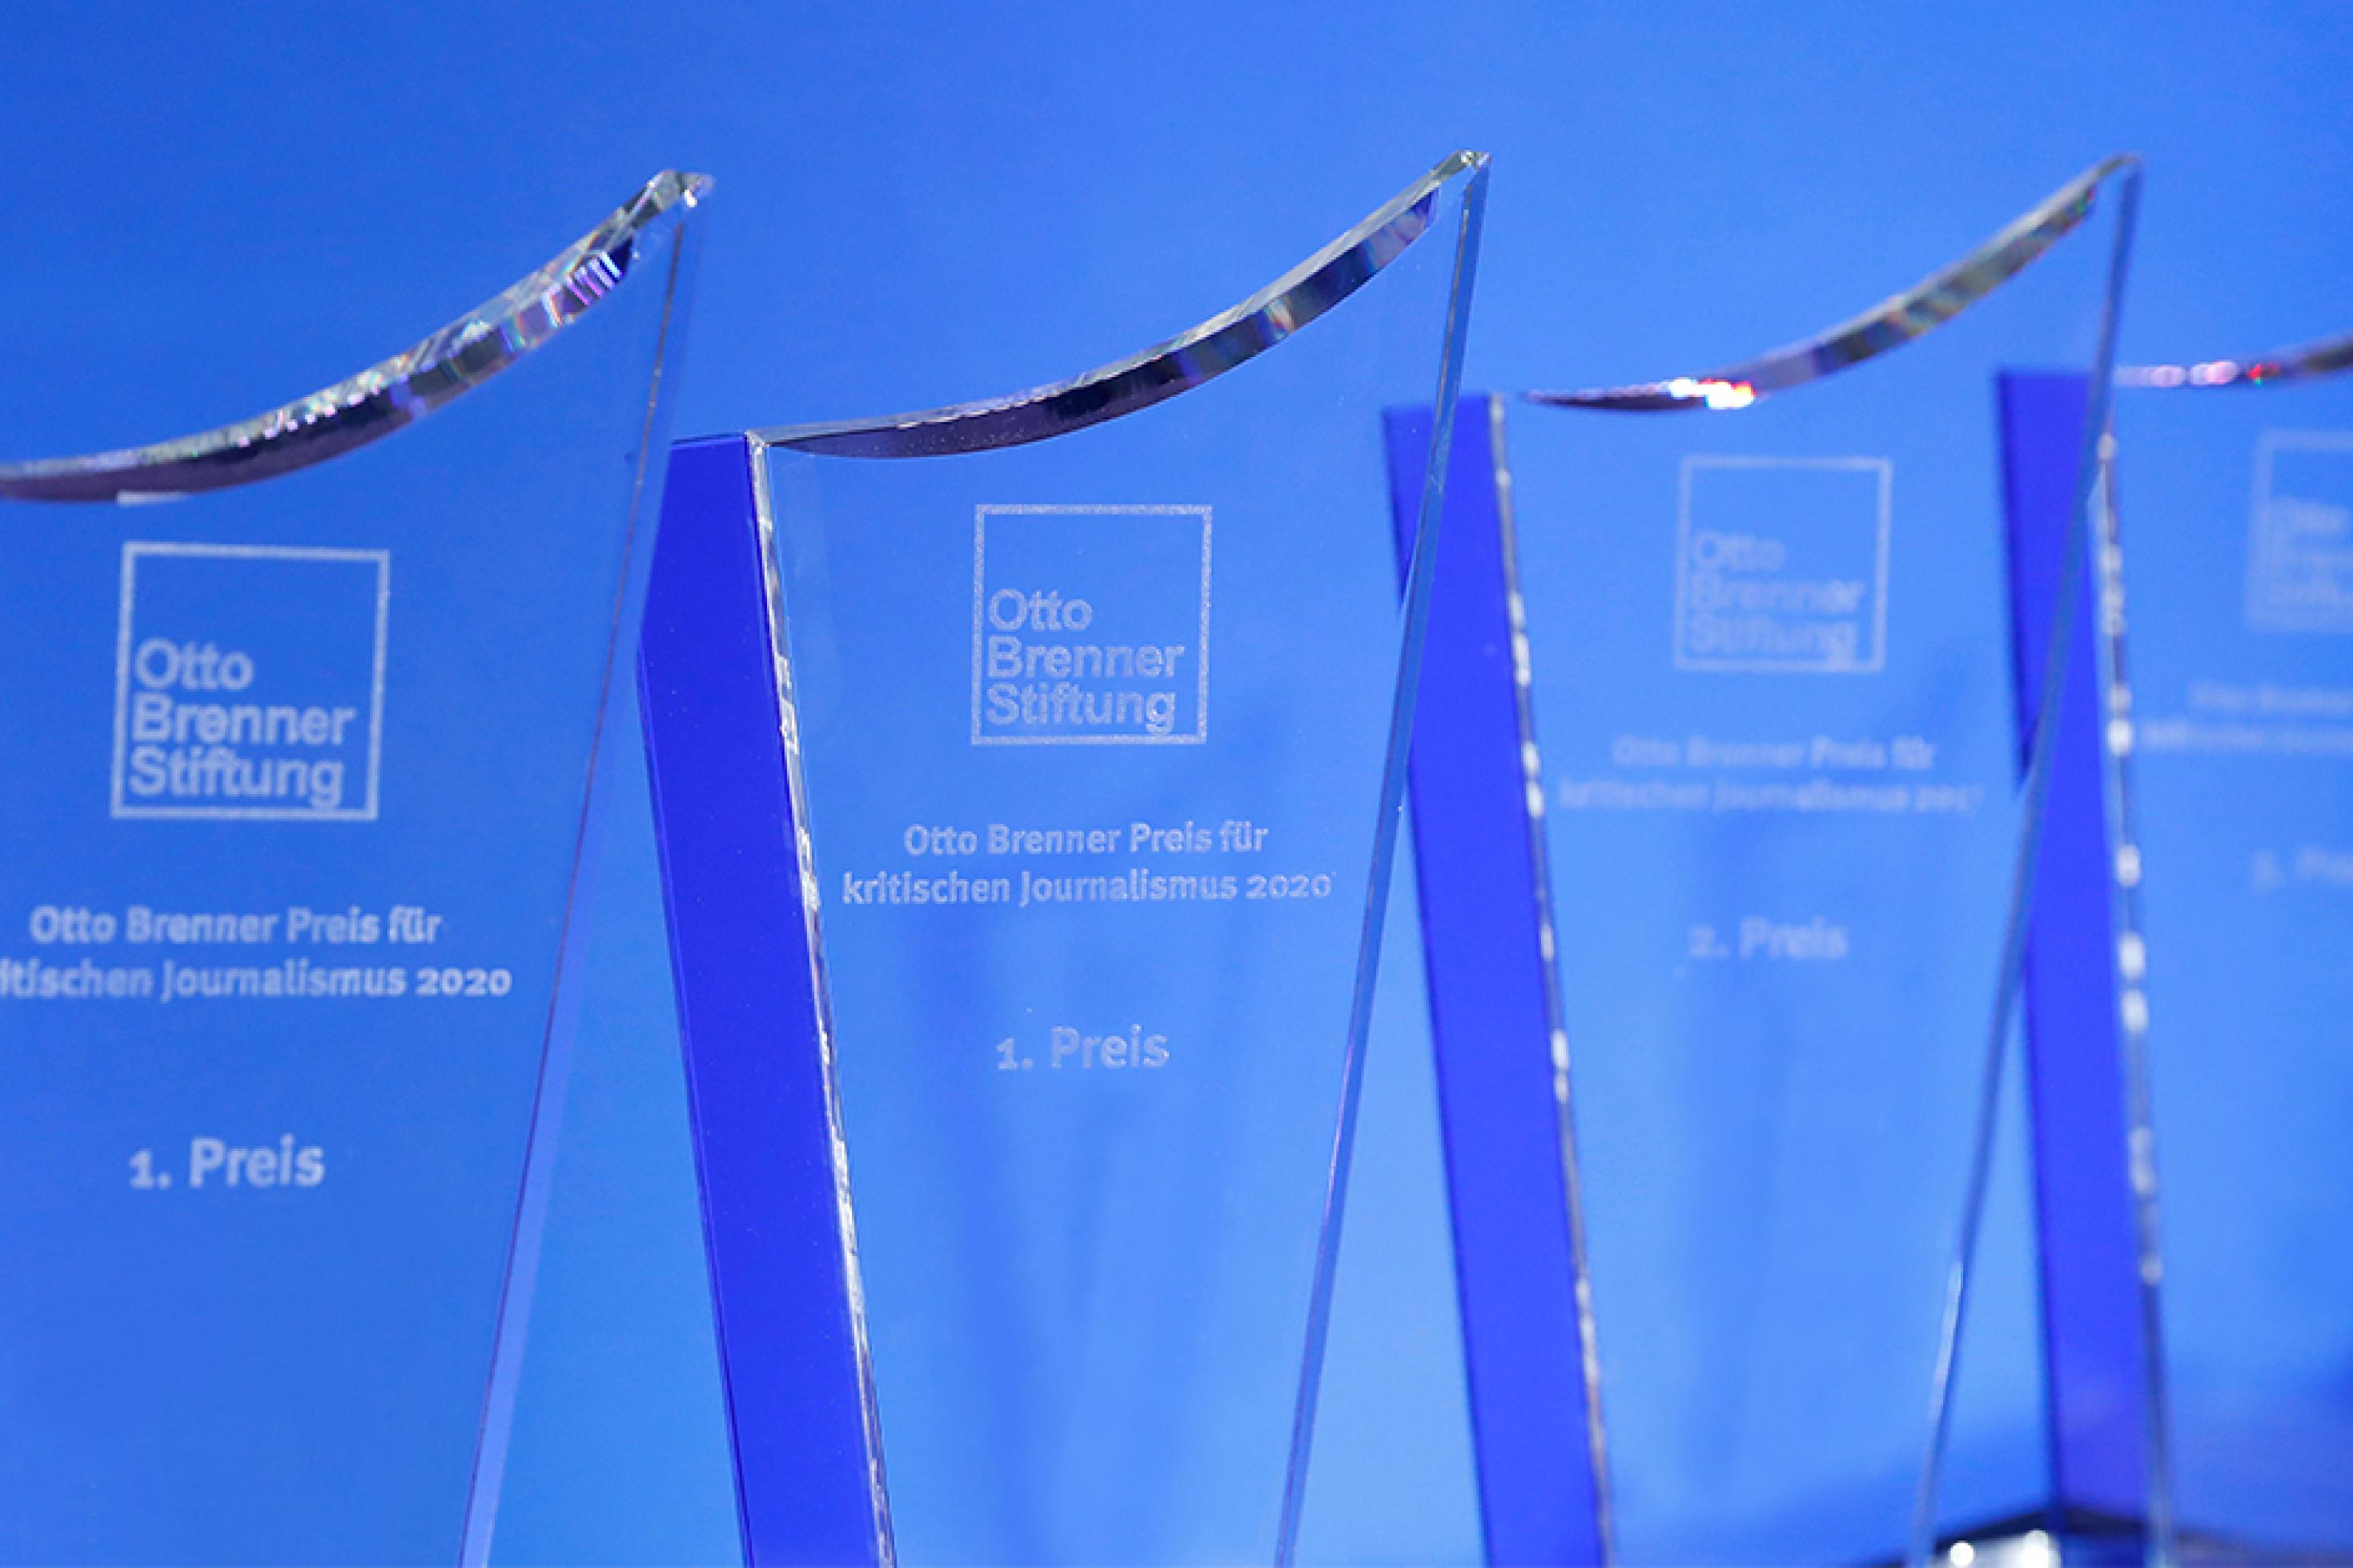 Mehrere Otto-Brenner-Preis-Trophäen aus Glas stehen vor einem blauen Hintergrund.